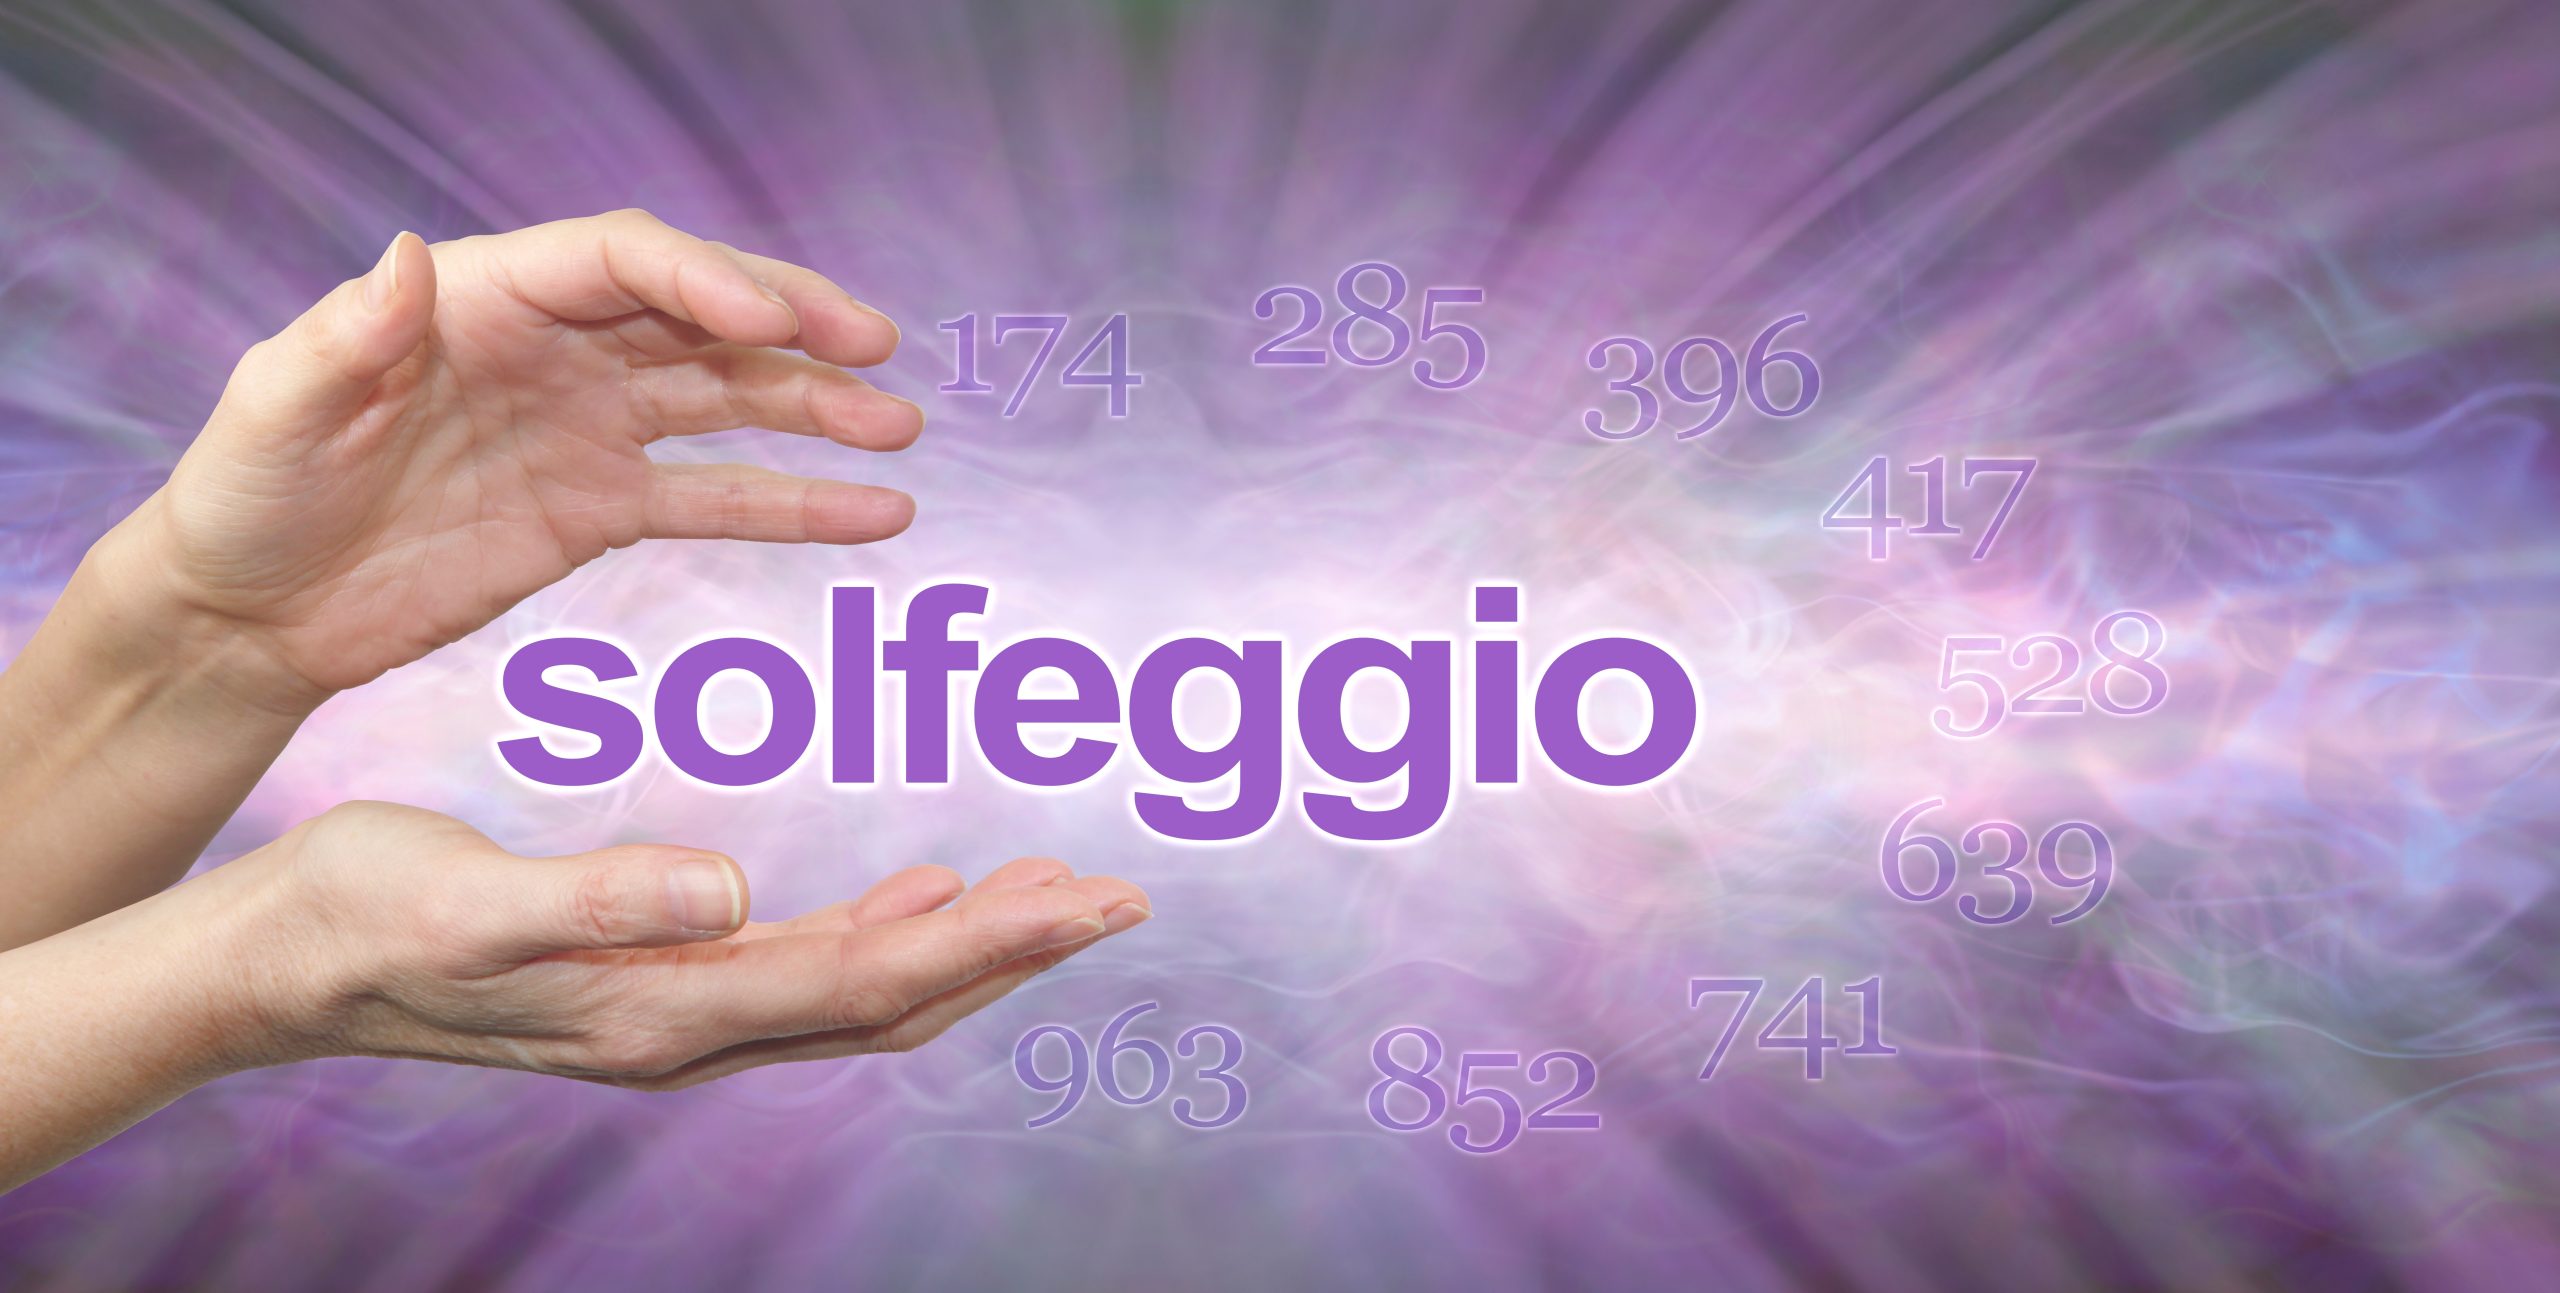 Heilfrequenzen: Die Solfeggio Frequenzen sind bestimmte Klänge und Schwingungen, welchen eine positive Wirkung auf unseren Körper und Geist zugeschrieben wird. Die Solfeggio Frequenzen entstammen einer sehr alten musikalischen Notationstechnik, bei welcher jedem Ton nicht nur eine Frequenz, sondern auch eine Silbe zugeordnet wird.